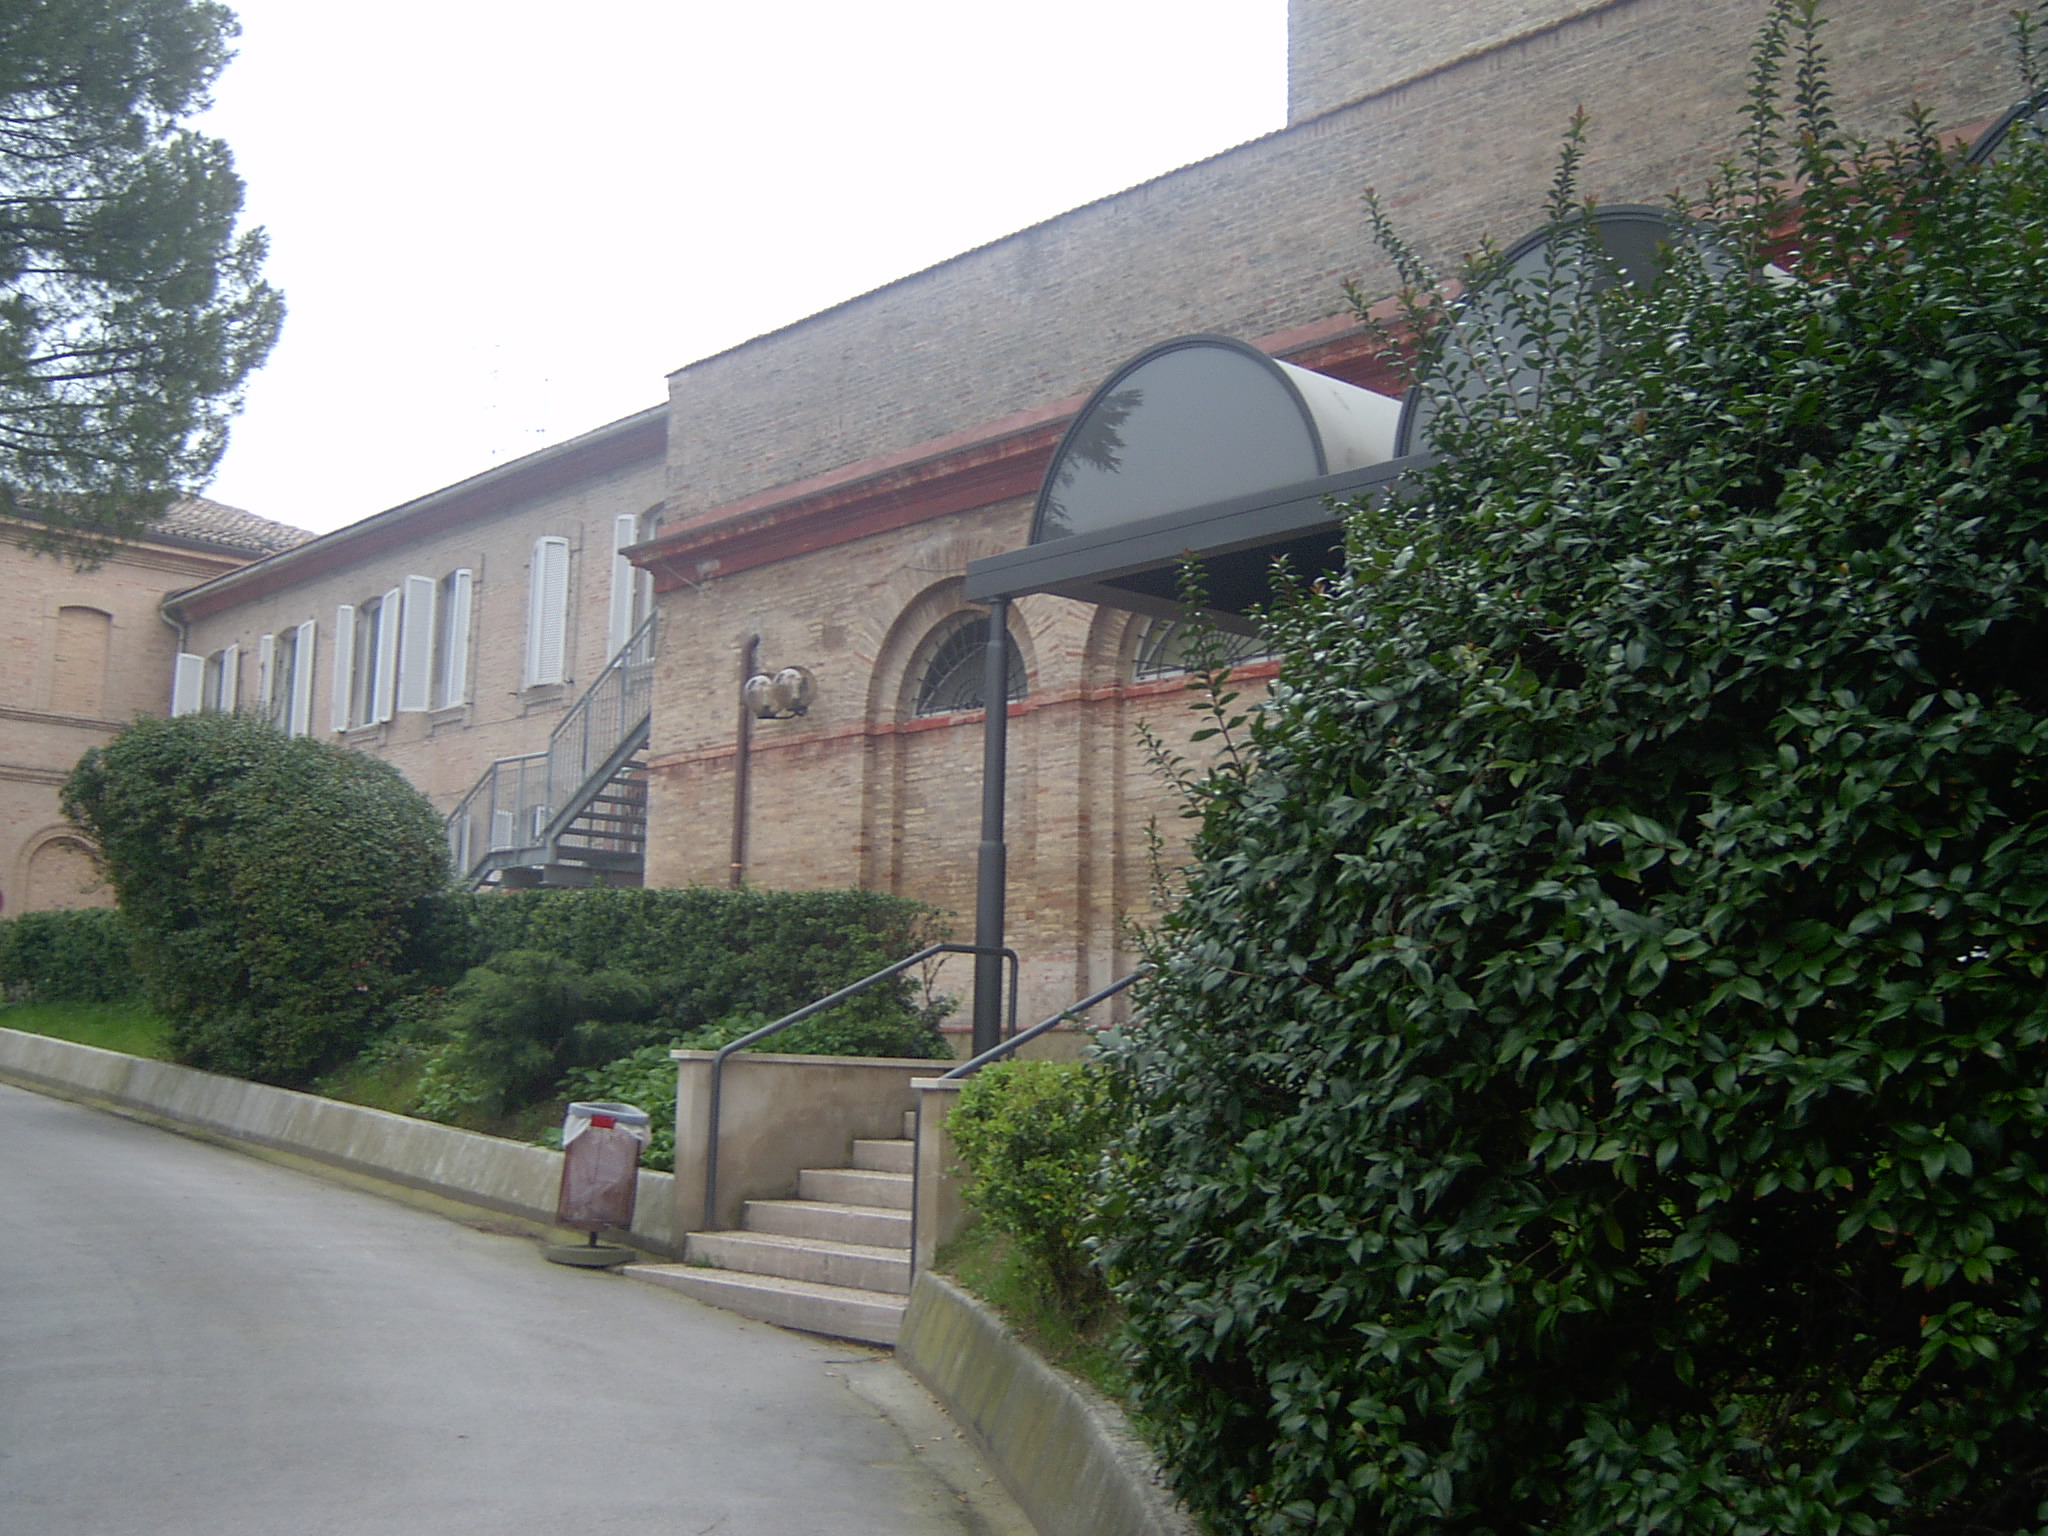 Convento dell'Immacolata (convento, francescano (cappuccini)) - Macerata (MC) 